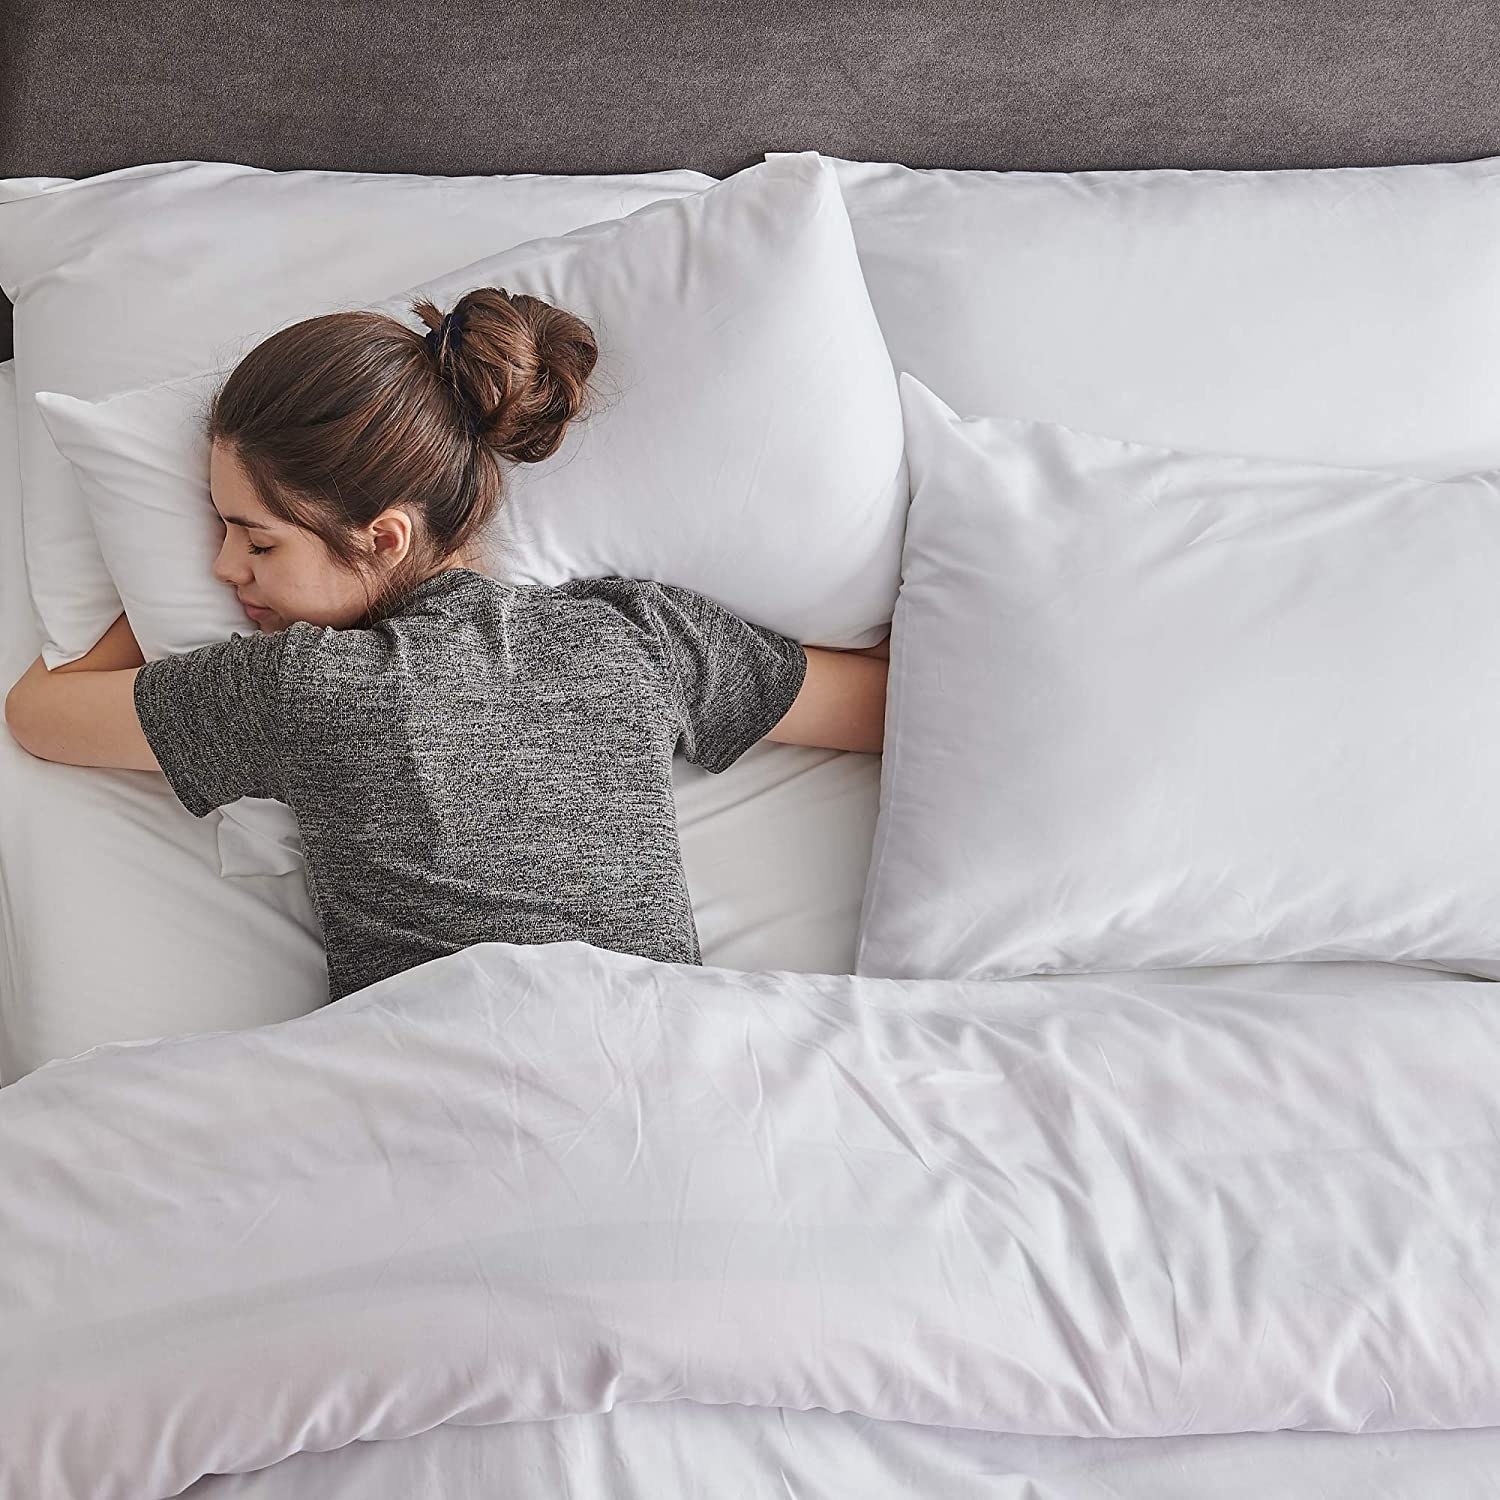 Persona durmiendo sobre una almohada de microfibra